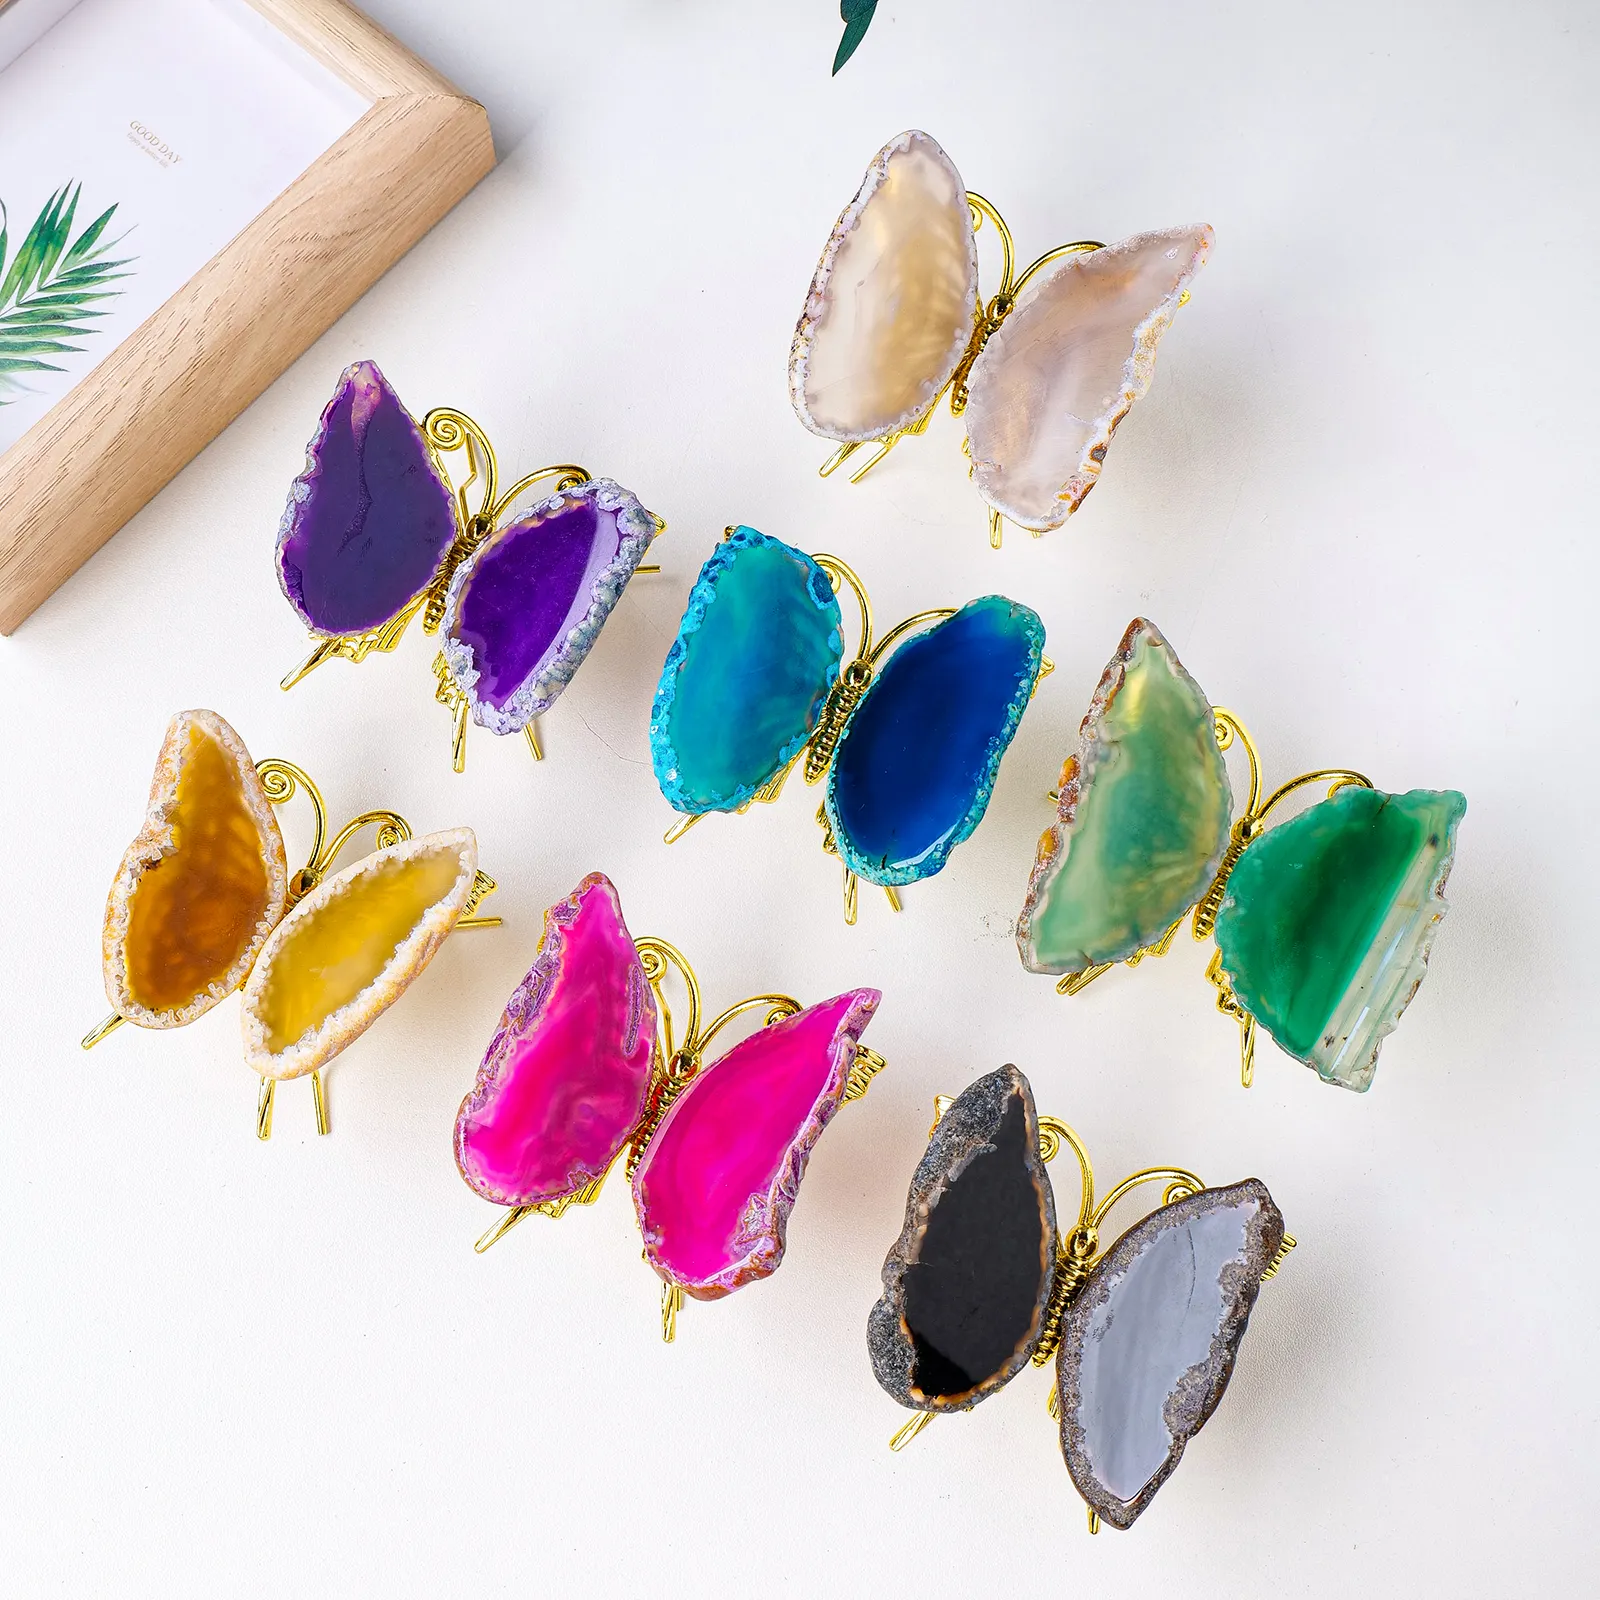 Venta al por mayor de cristal curativo natural hecho a mano colorido ágata rebanada mariposa para la decoración del hogar